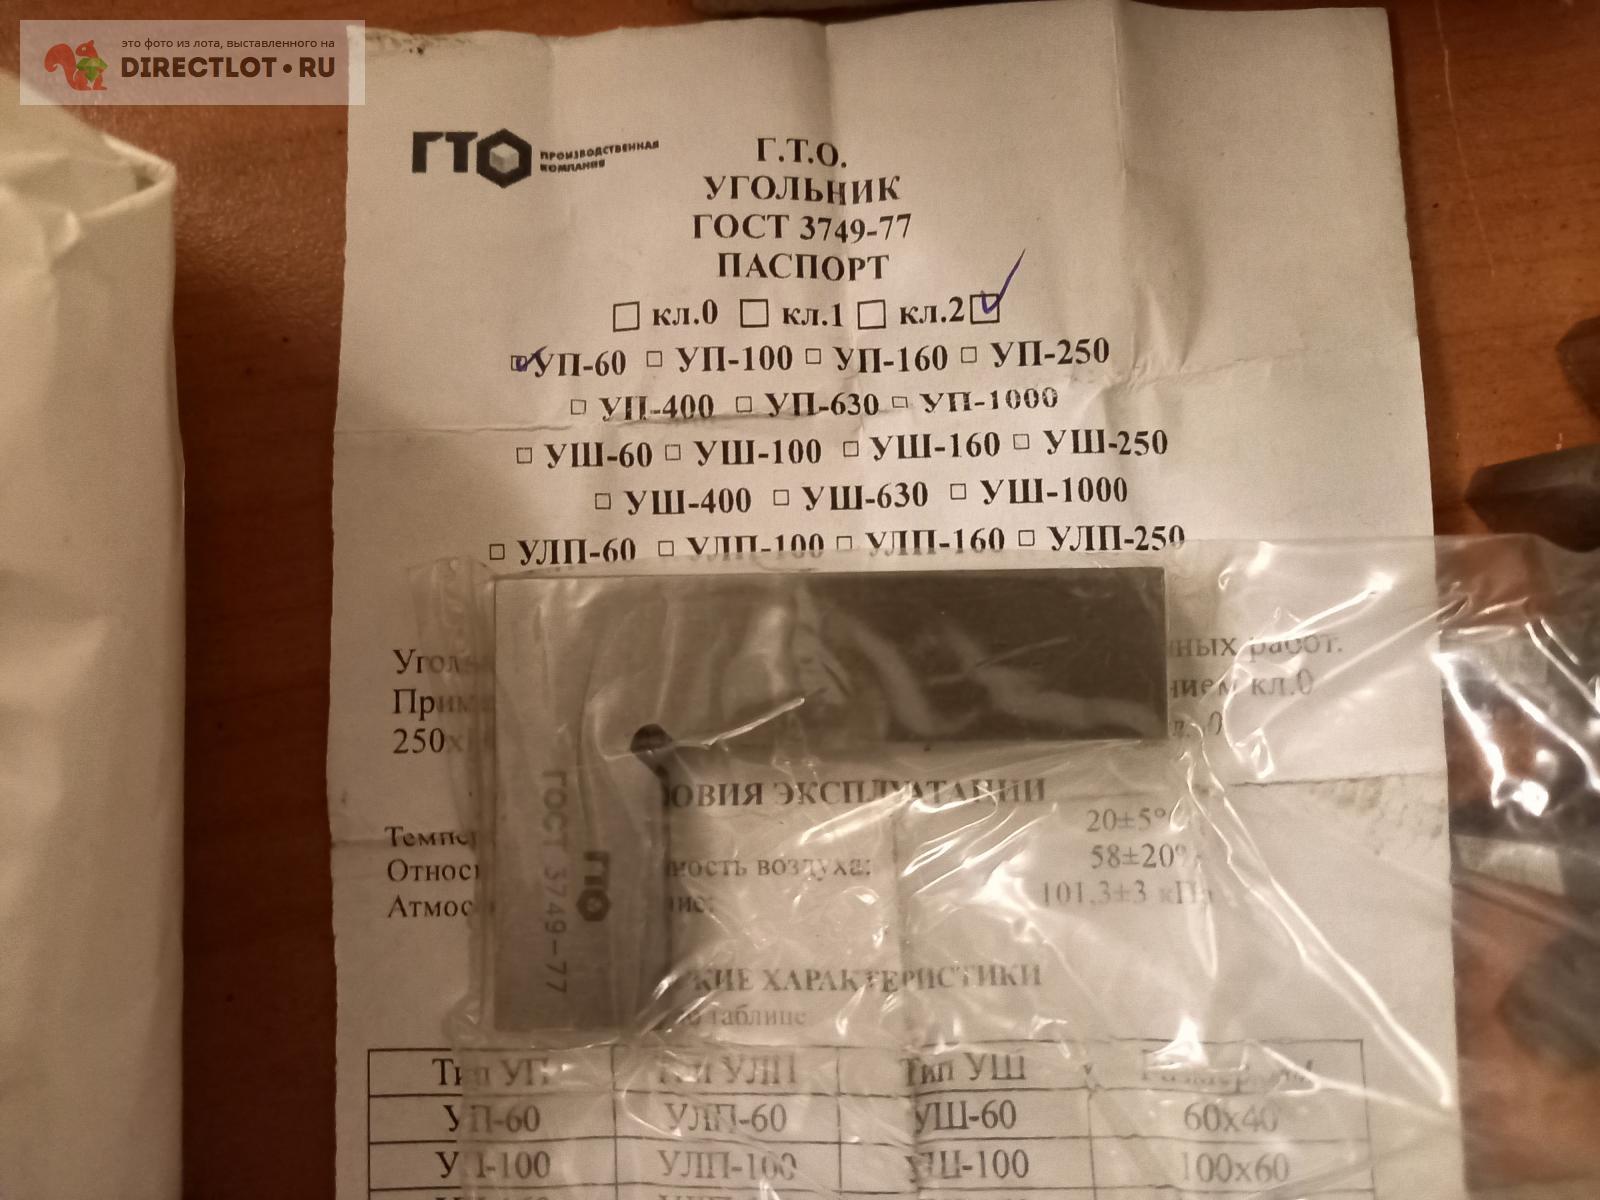  поверочный УП 60х40 мм кл. 2  в Екатеринбурге цена 700 Р .